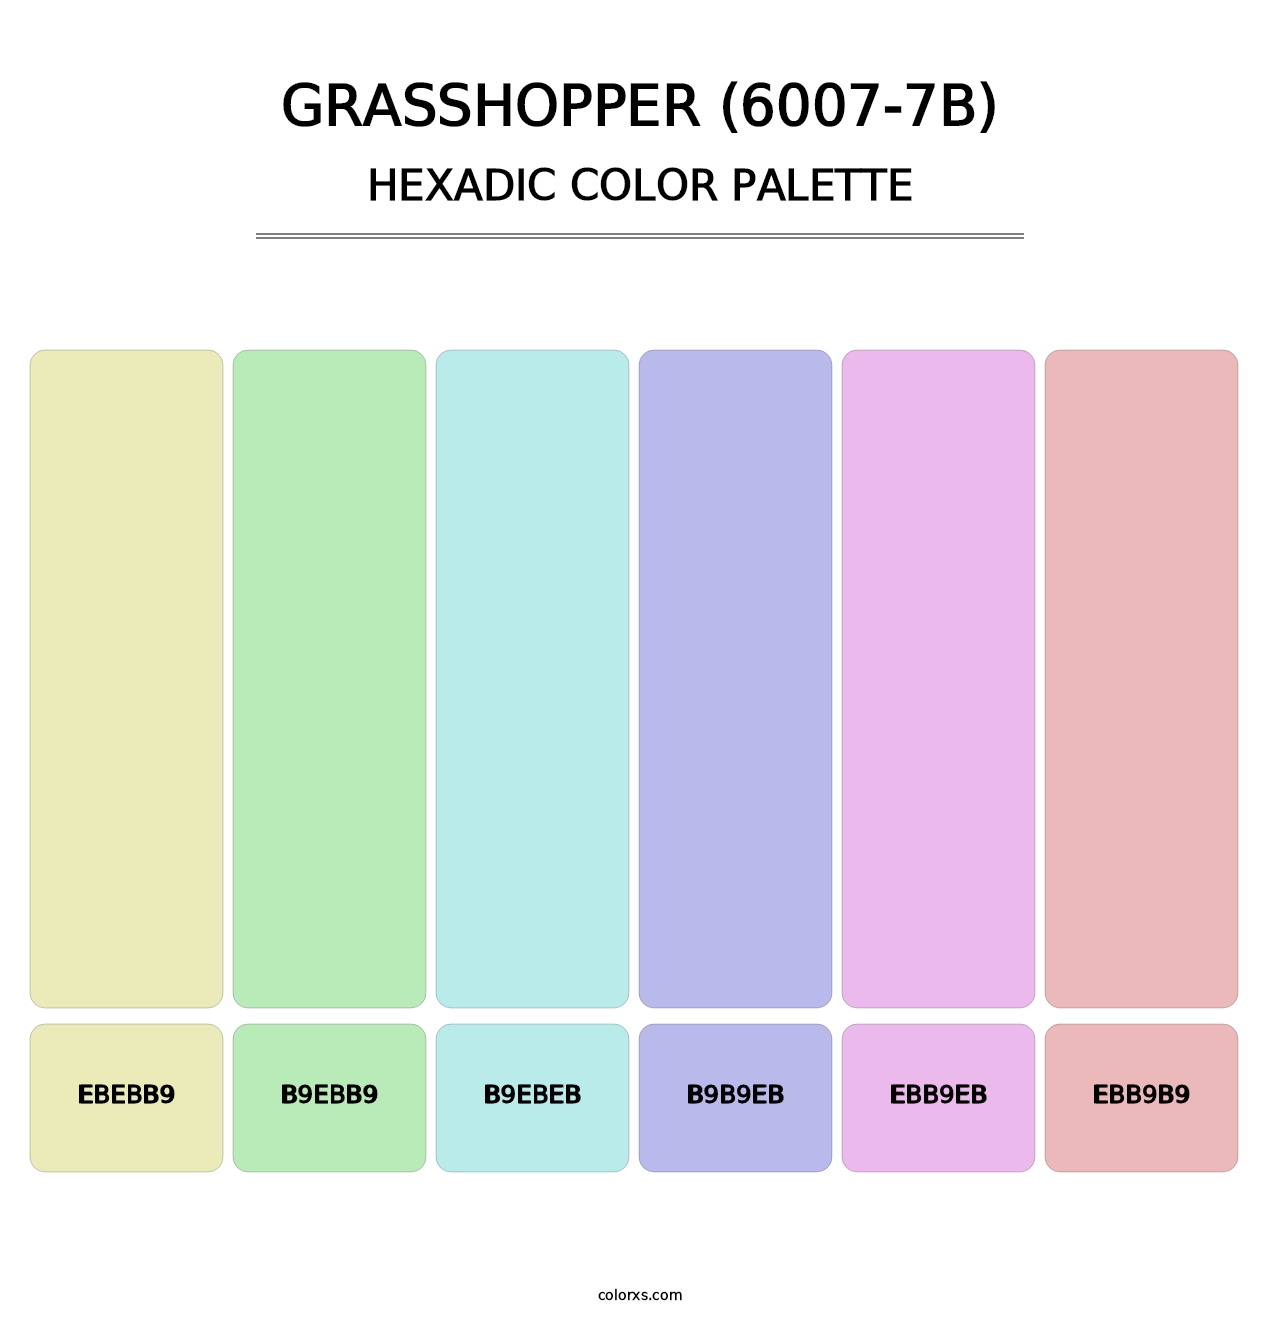 Grasshopper (6007-7B) - Hexadic Color Palette